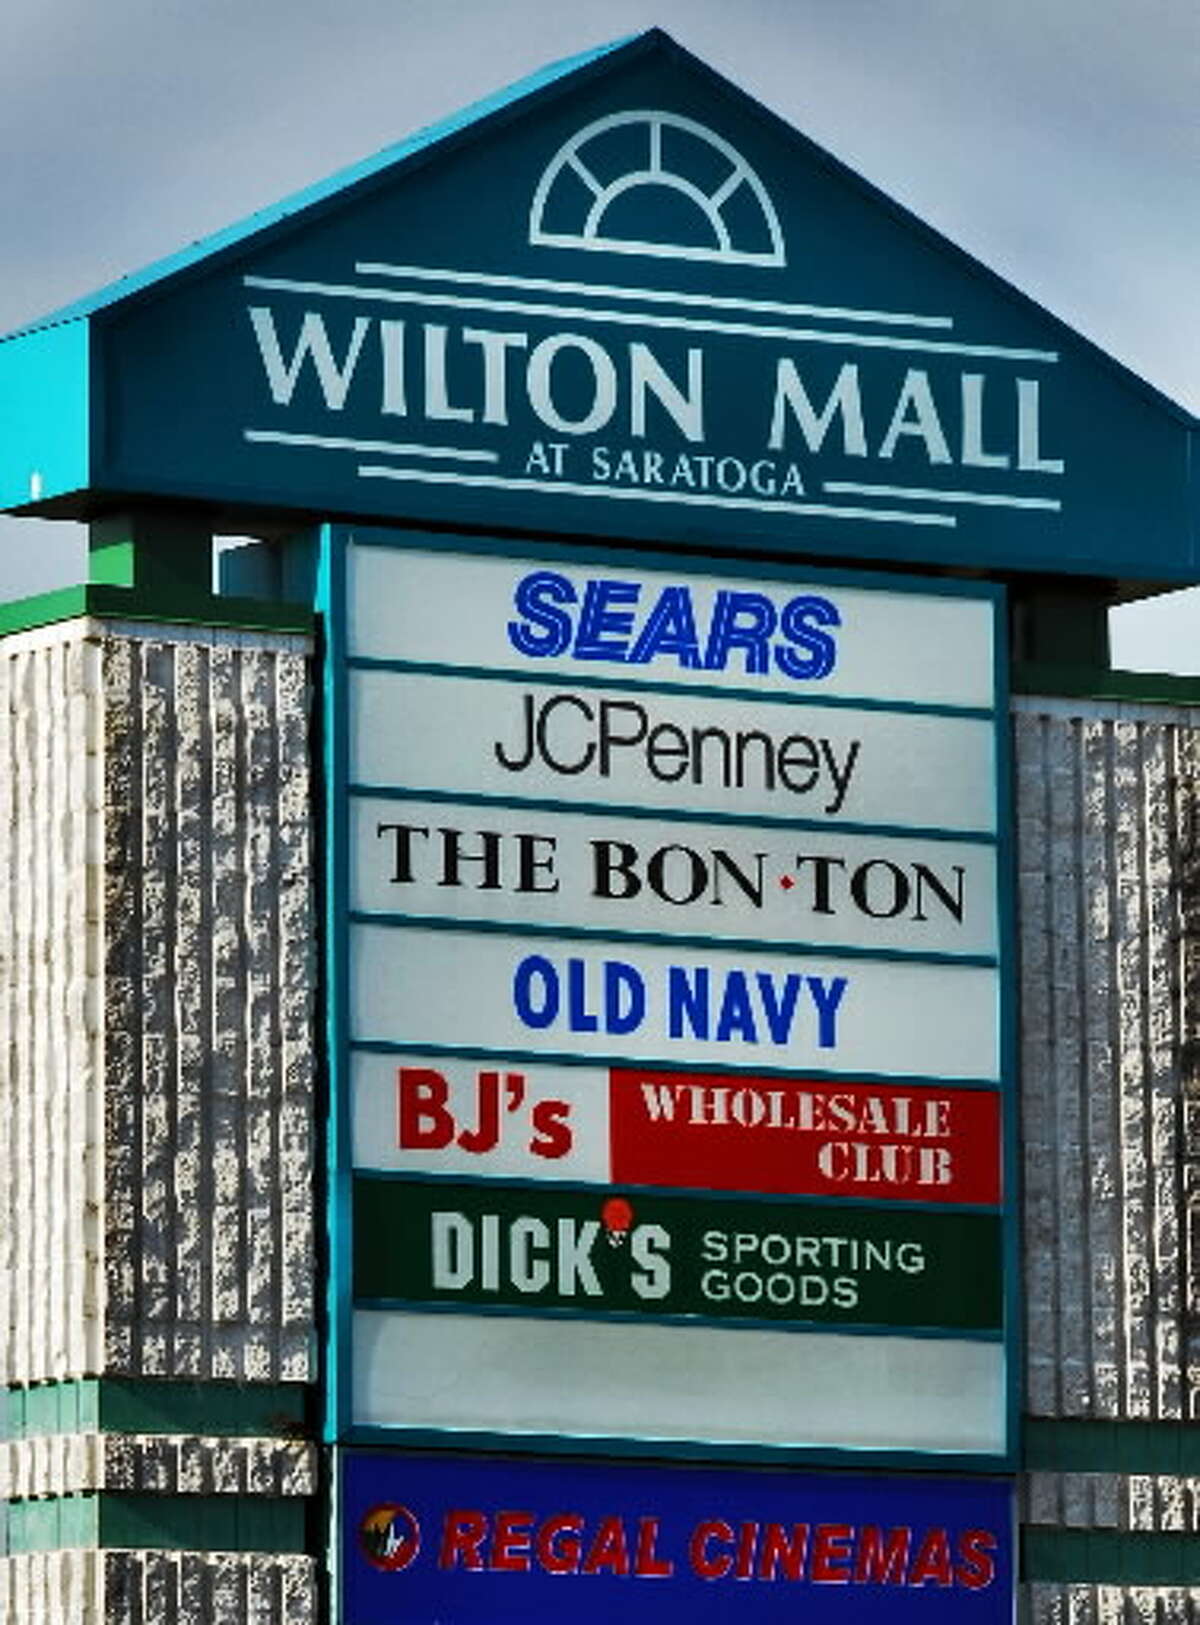 Wilton Mall in Saratoga.